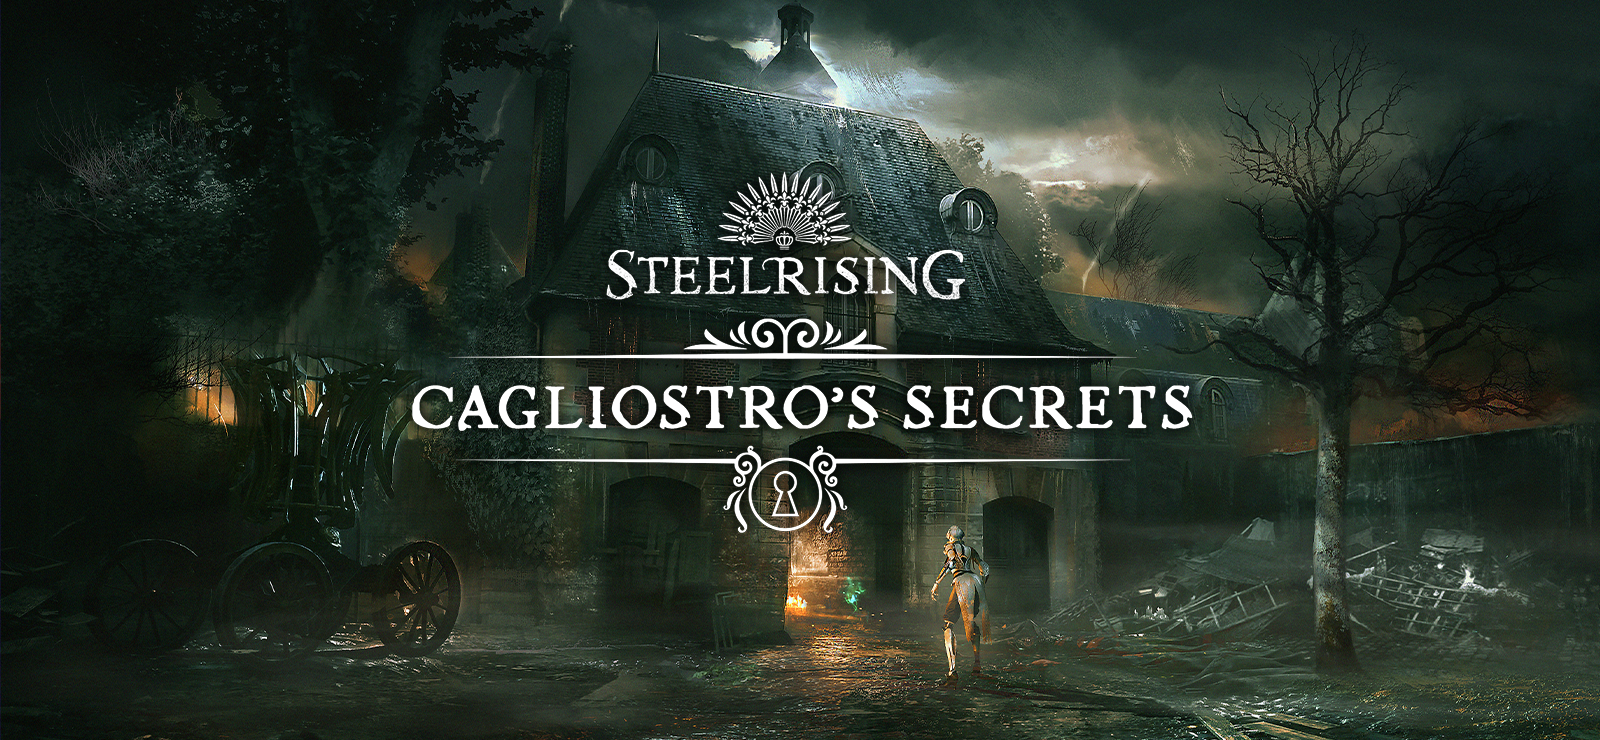 Steelrising - Cagliostro’s Secrets